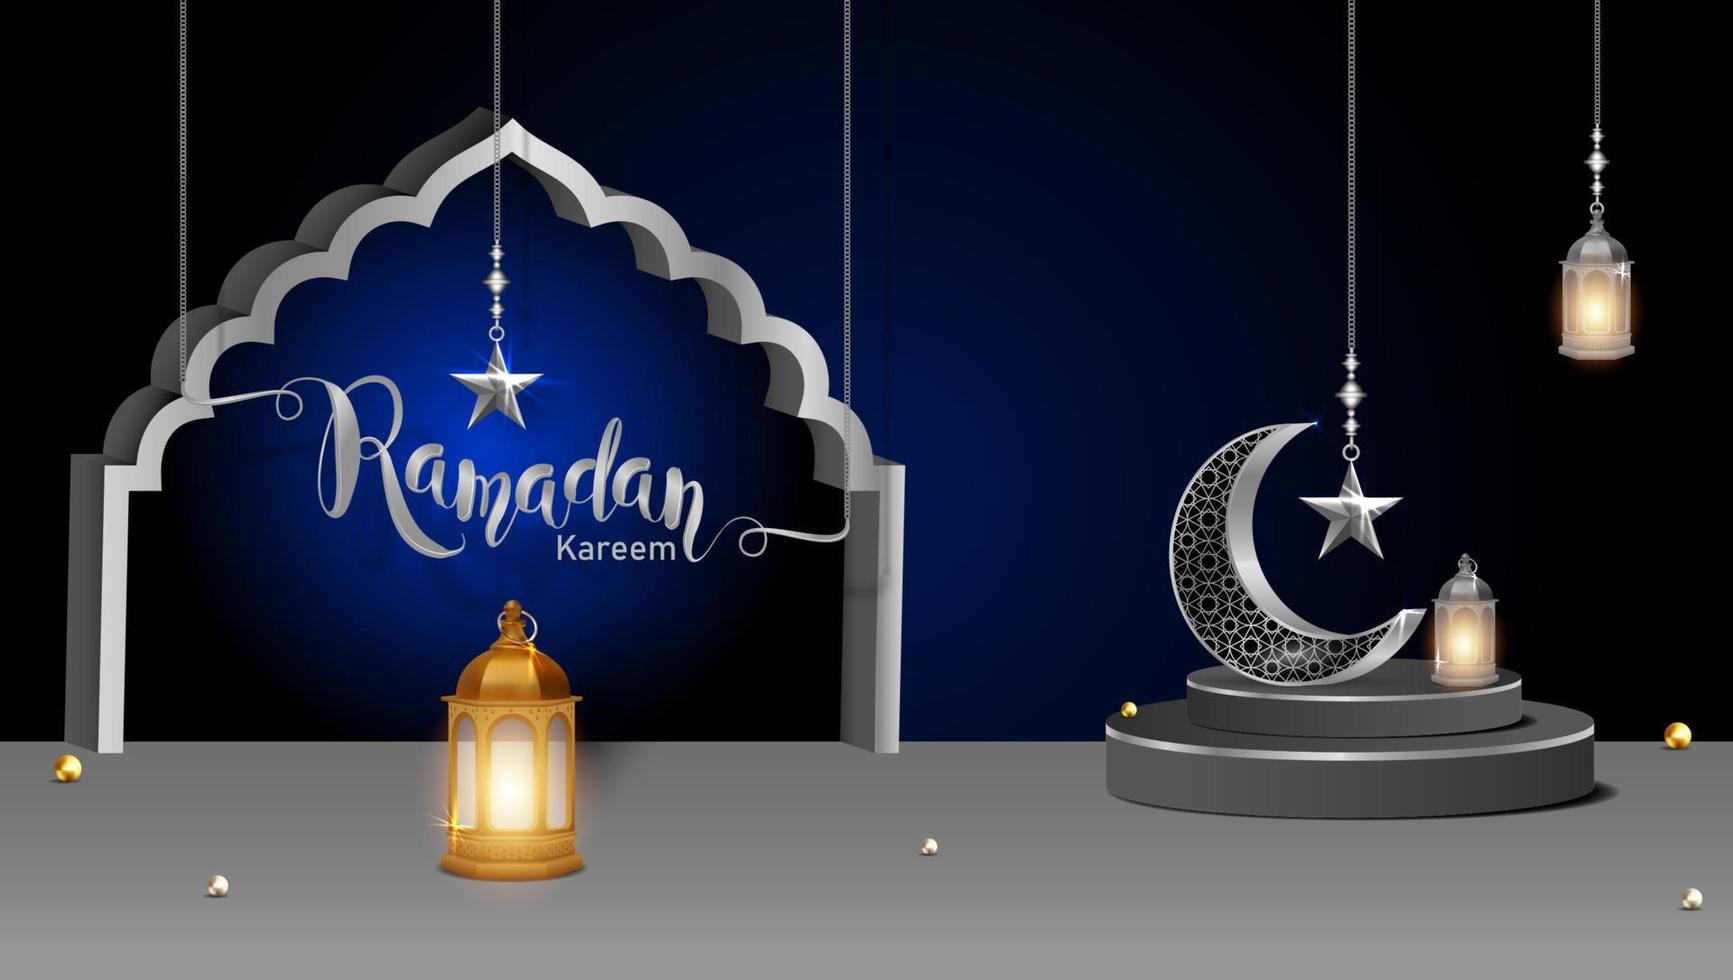 3d moderne islamique vacances bannière. afficher podium avec Ramadan lanterne, métal lune et mosquée portail vecteur